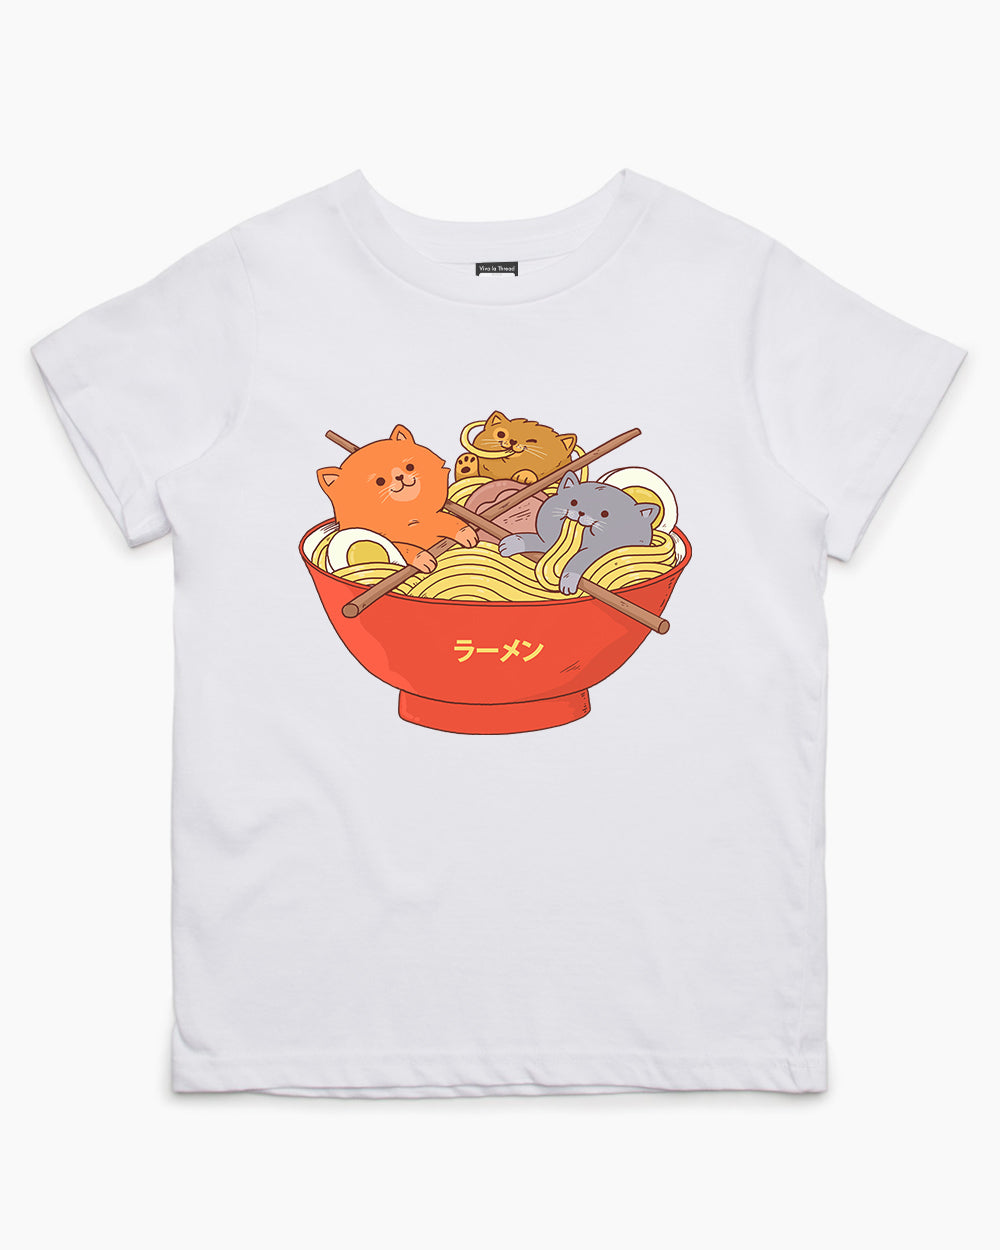 Anime cat shirt Halloween shirt-CL – Colamaga